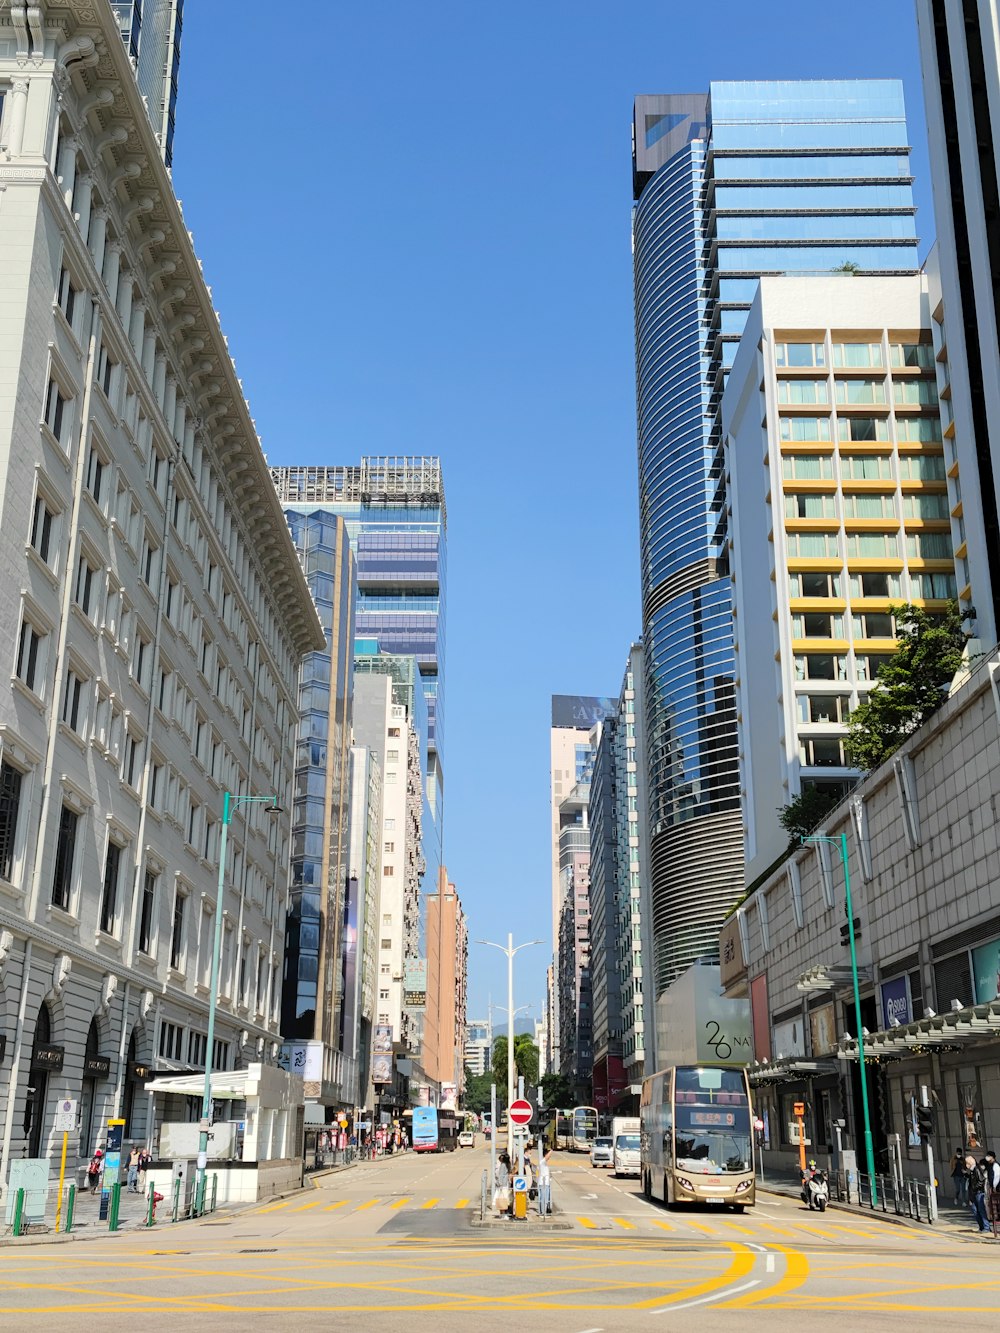 Una calle de la ciudad llena de edificios altos y tráfico